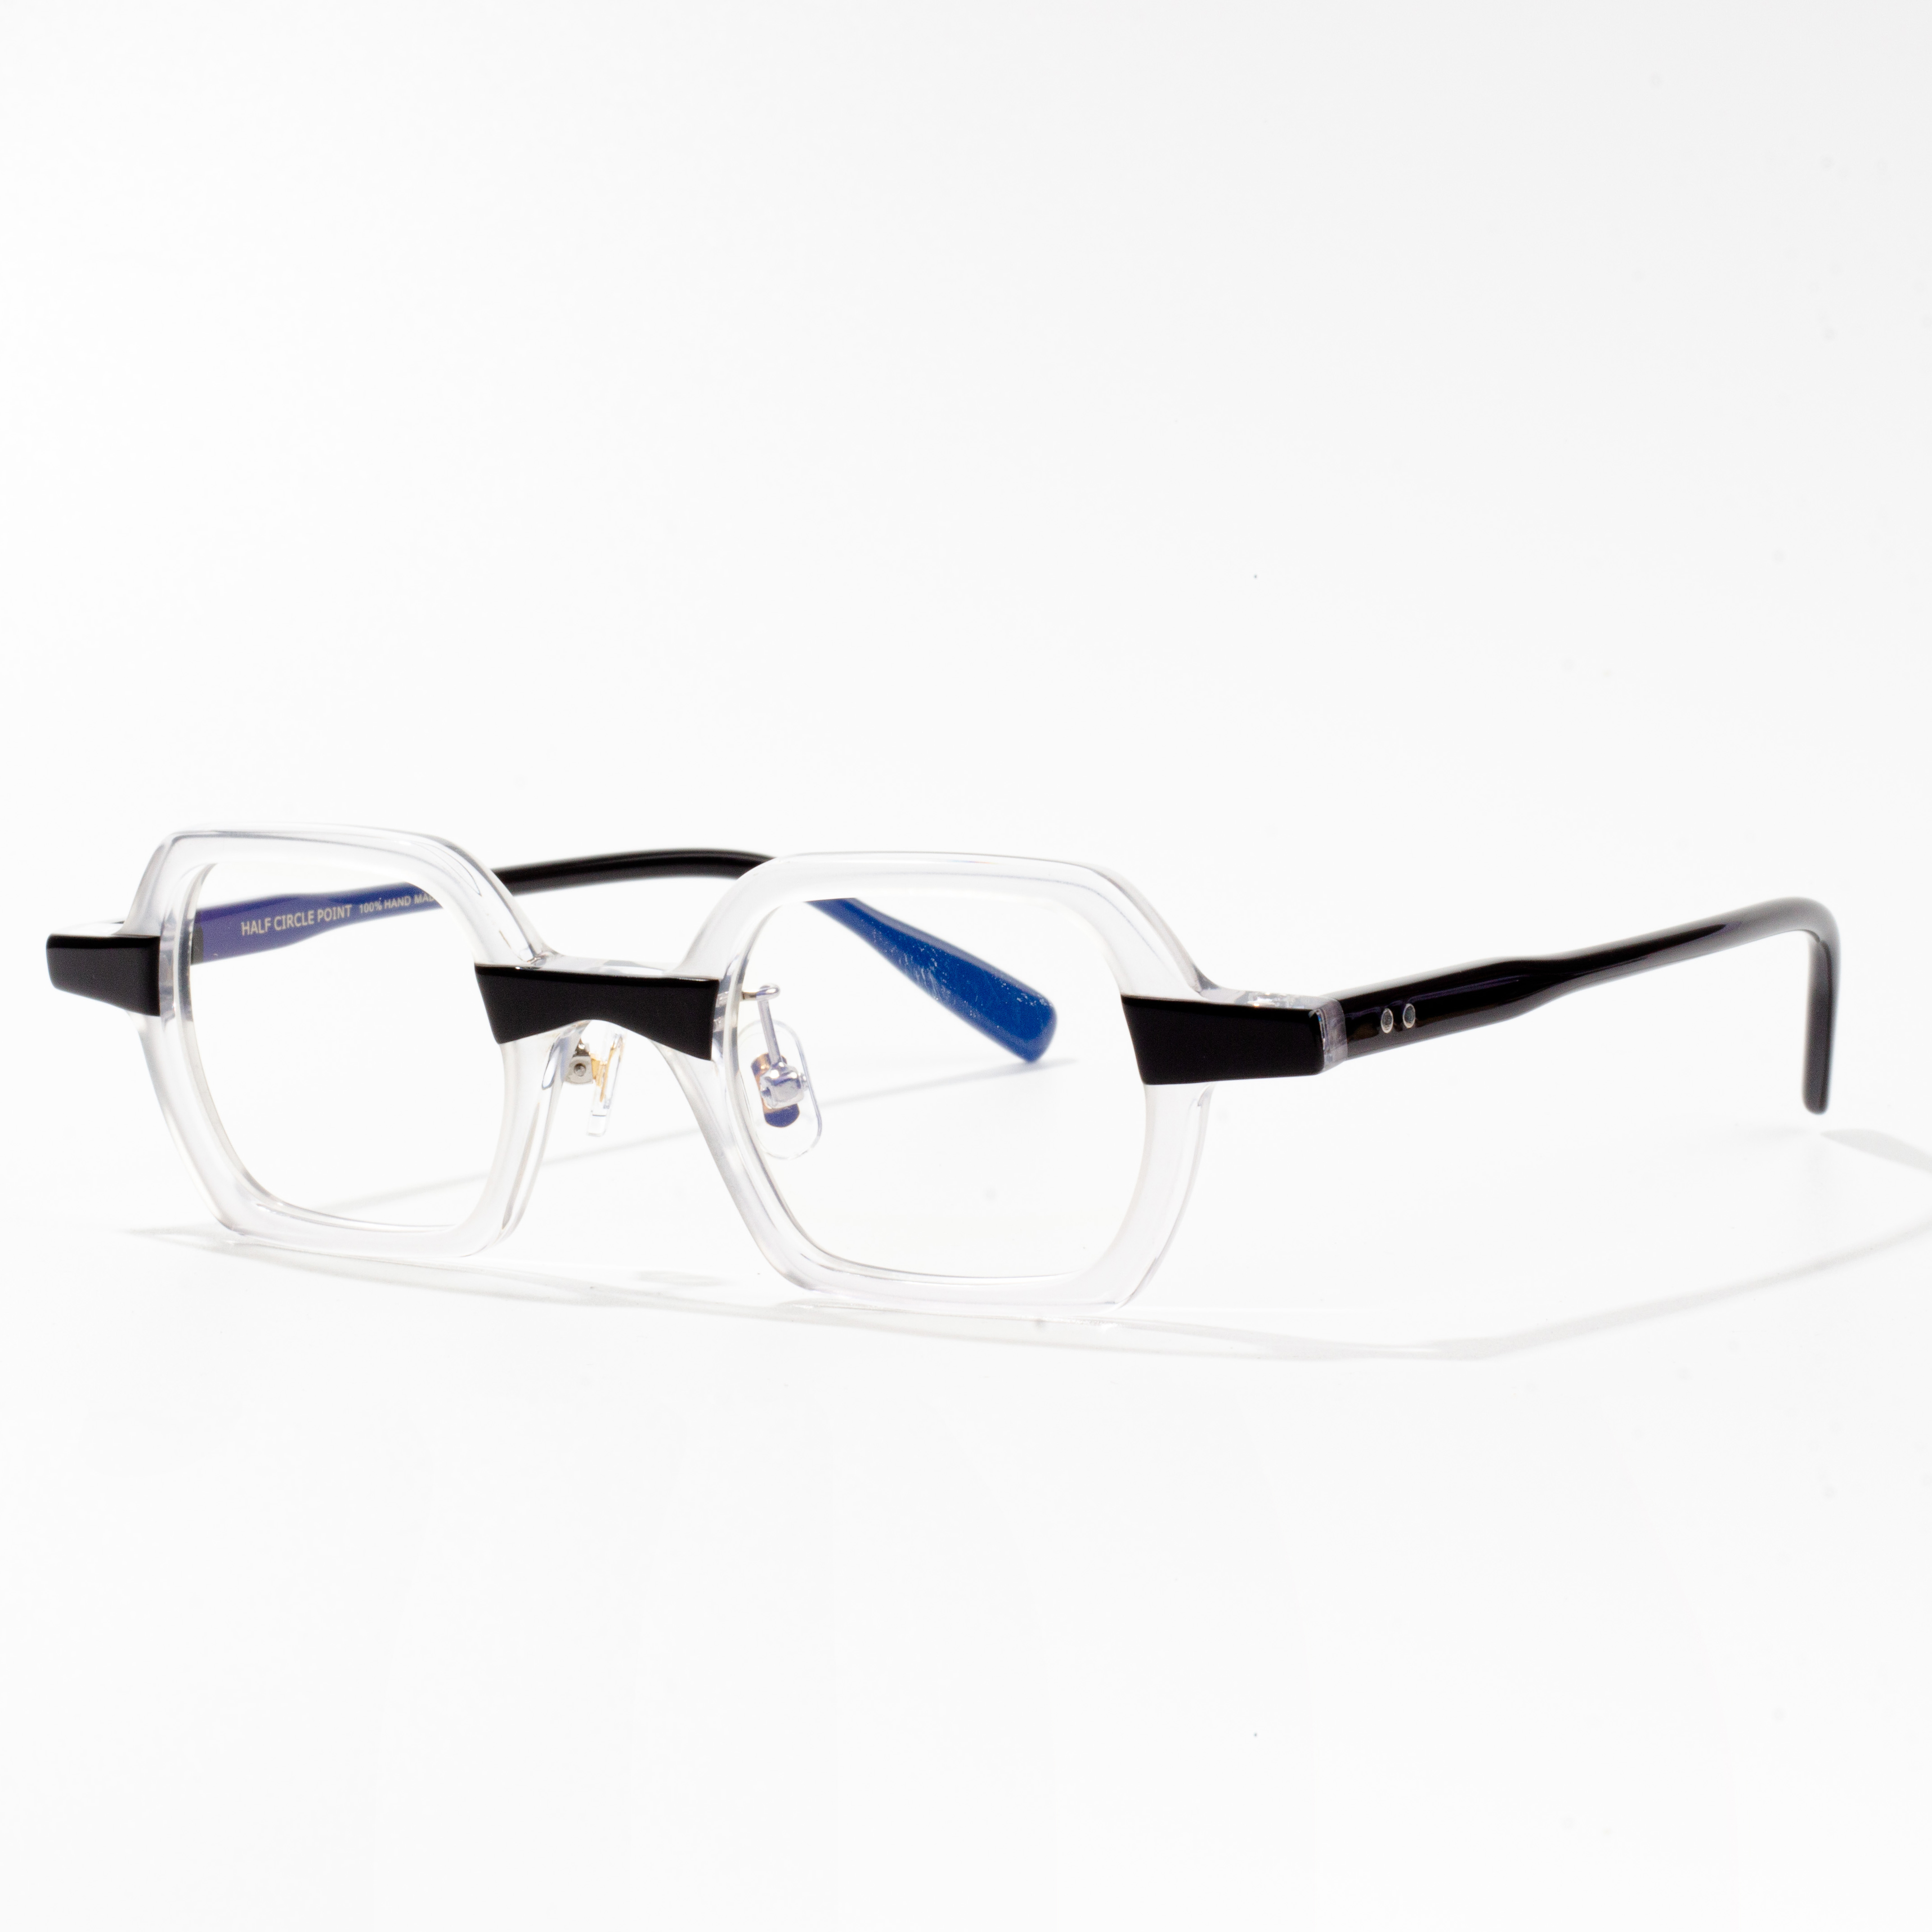 चश्मा फ्रेम निर्माता संयुक्त राज्य अमेरिका